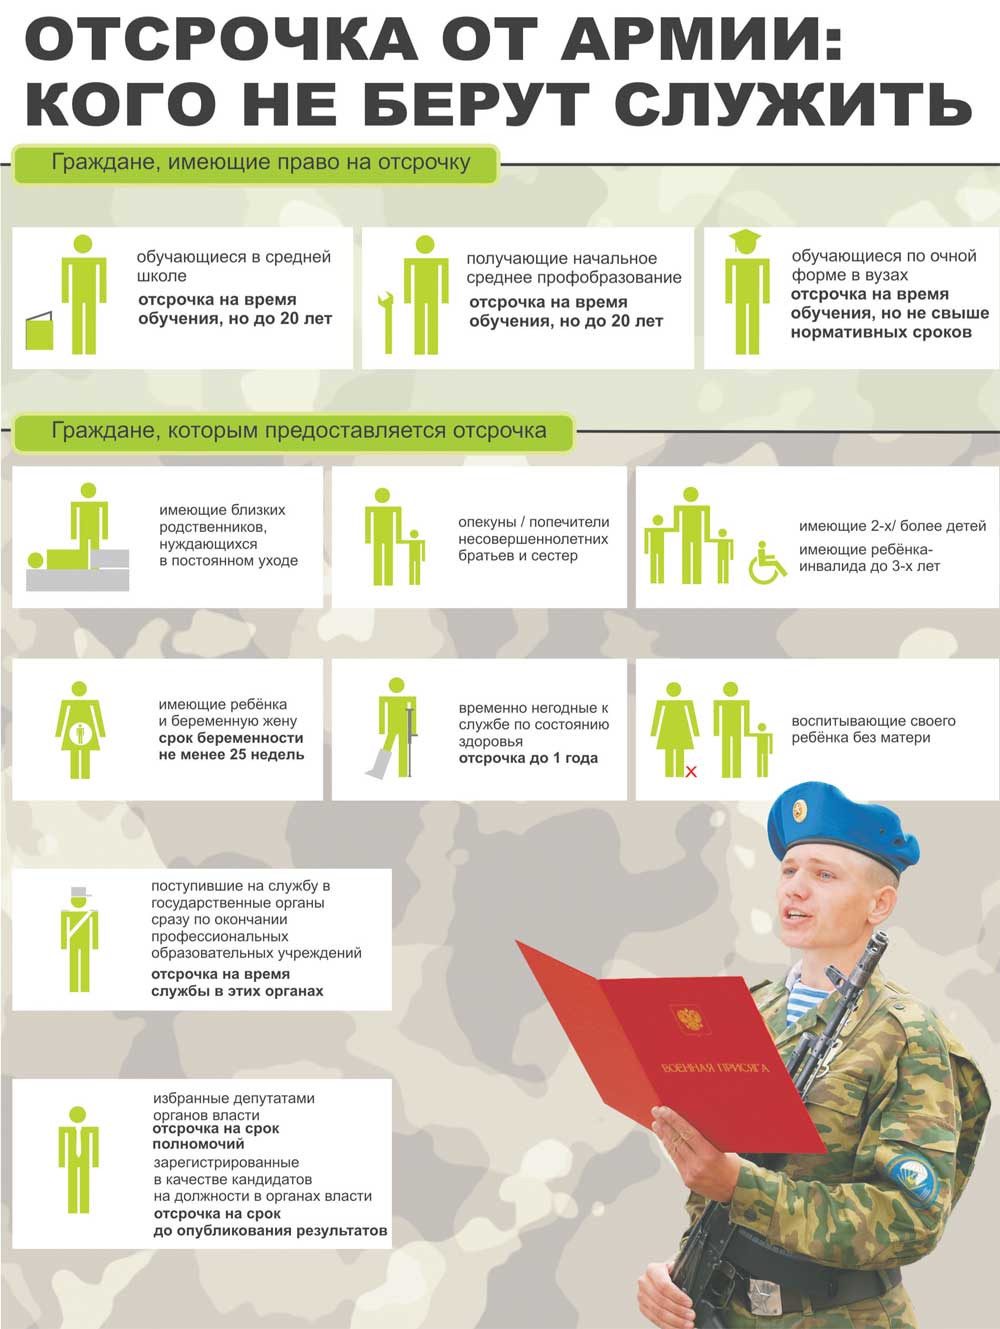 Условия и порядок предоставления отсрочки от армии